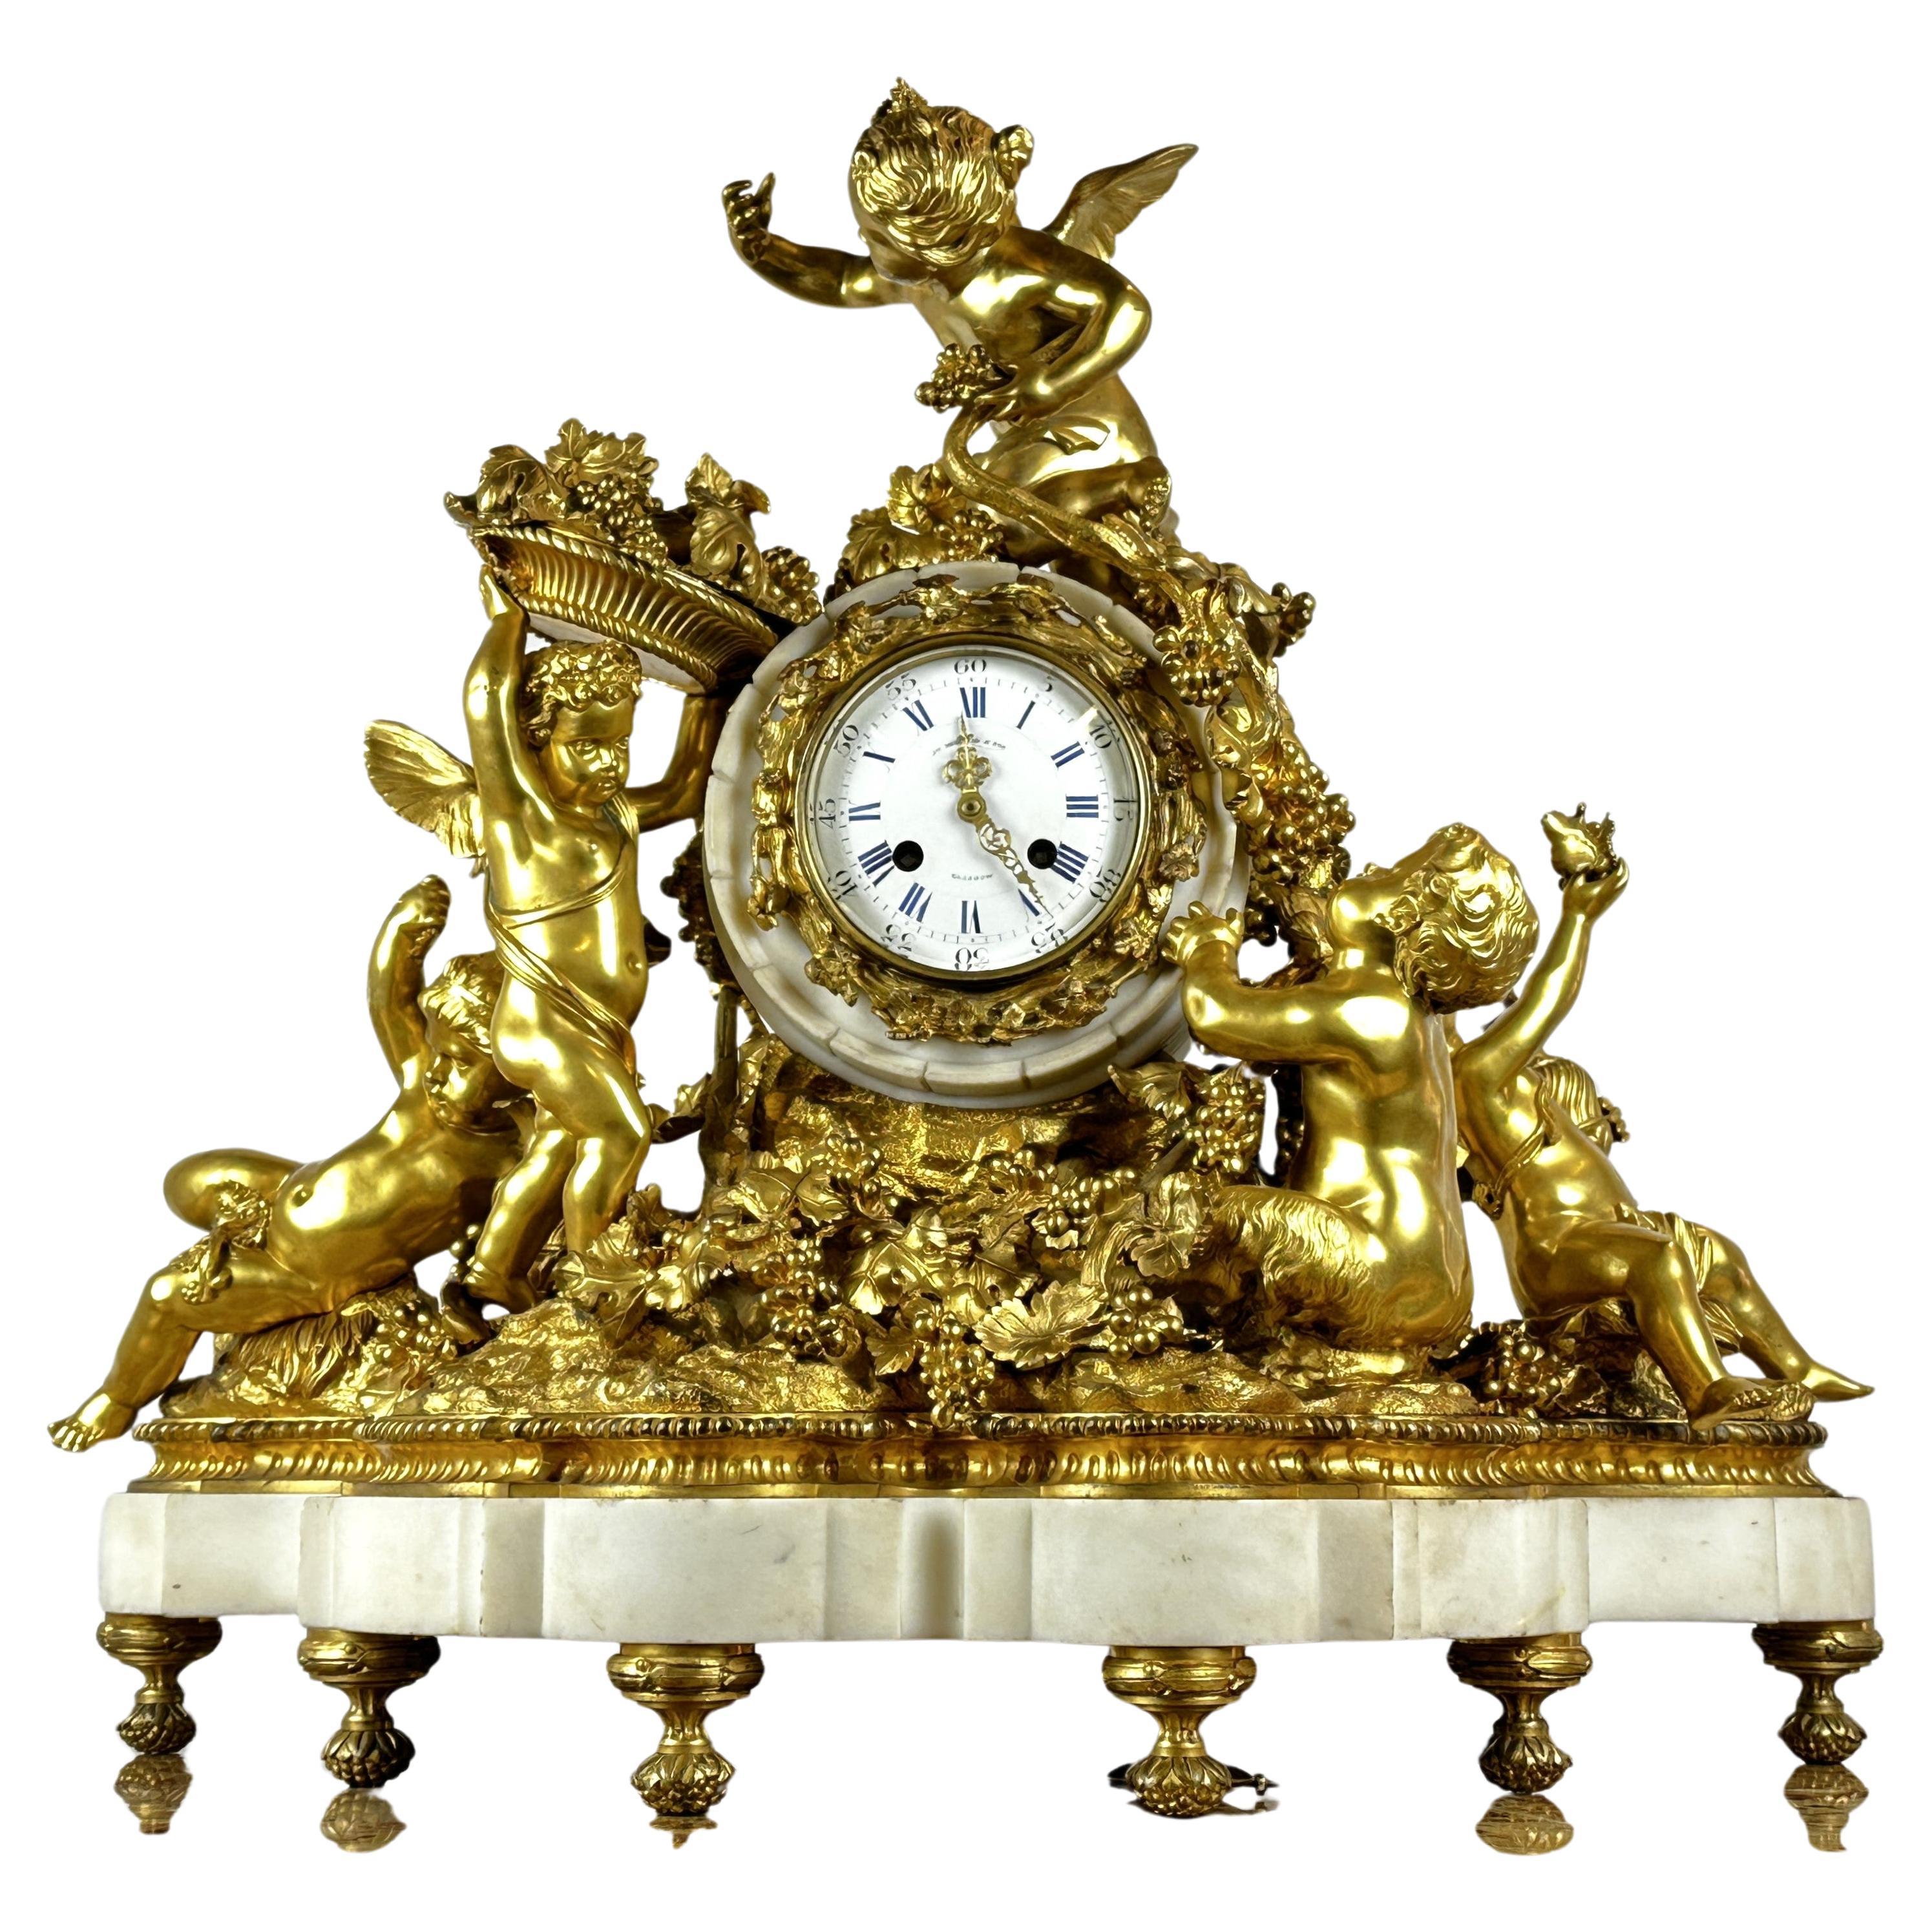 Importante horloge Lerolle Freres 5 putti figures 19ème siècle